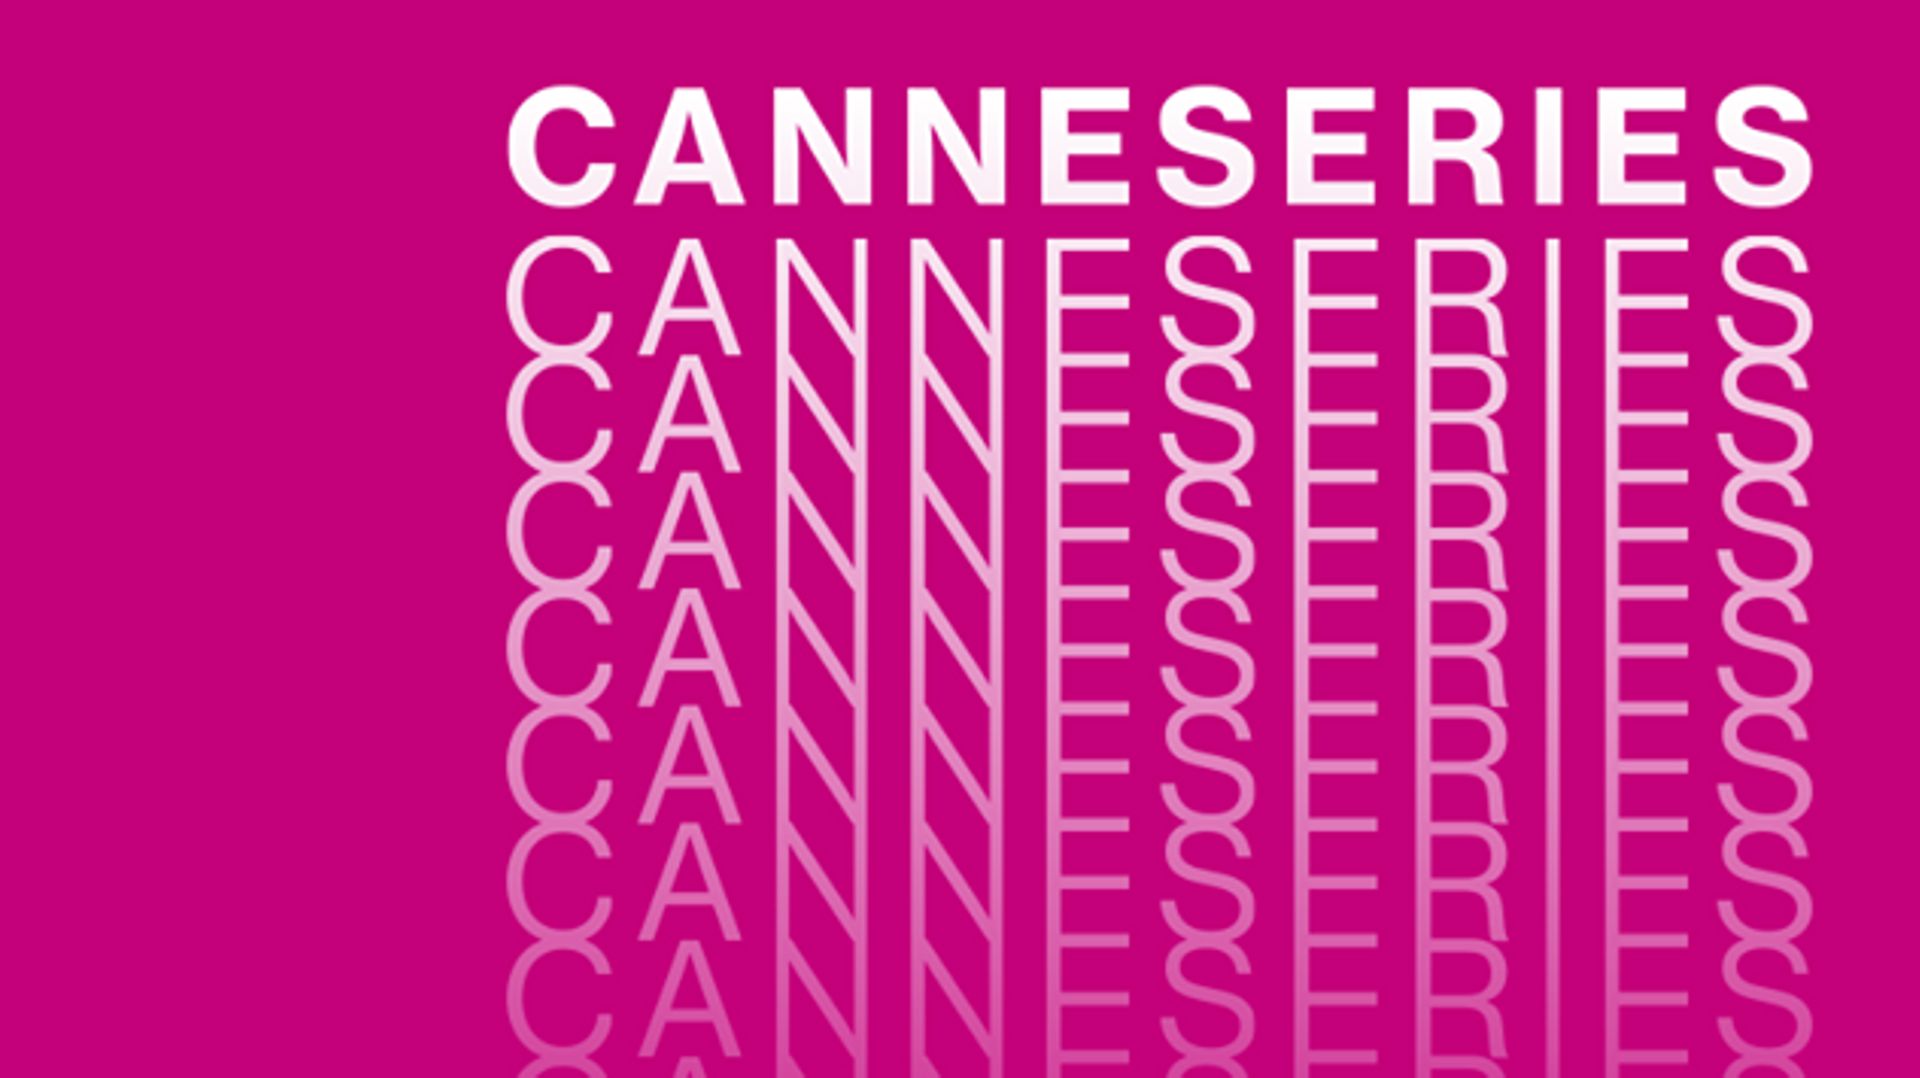 le-festival-canneseries-affiche-ses-ambitions-6-mois-avant-son-lancement